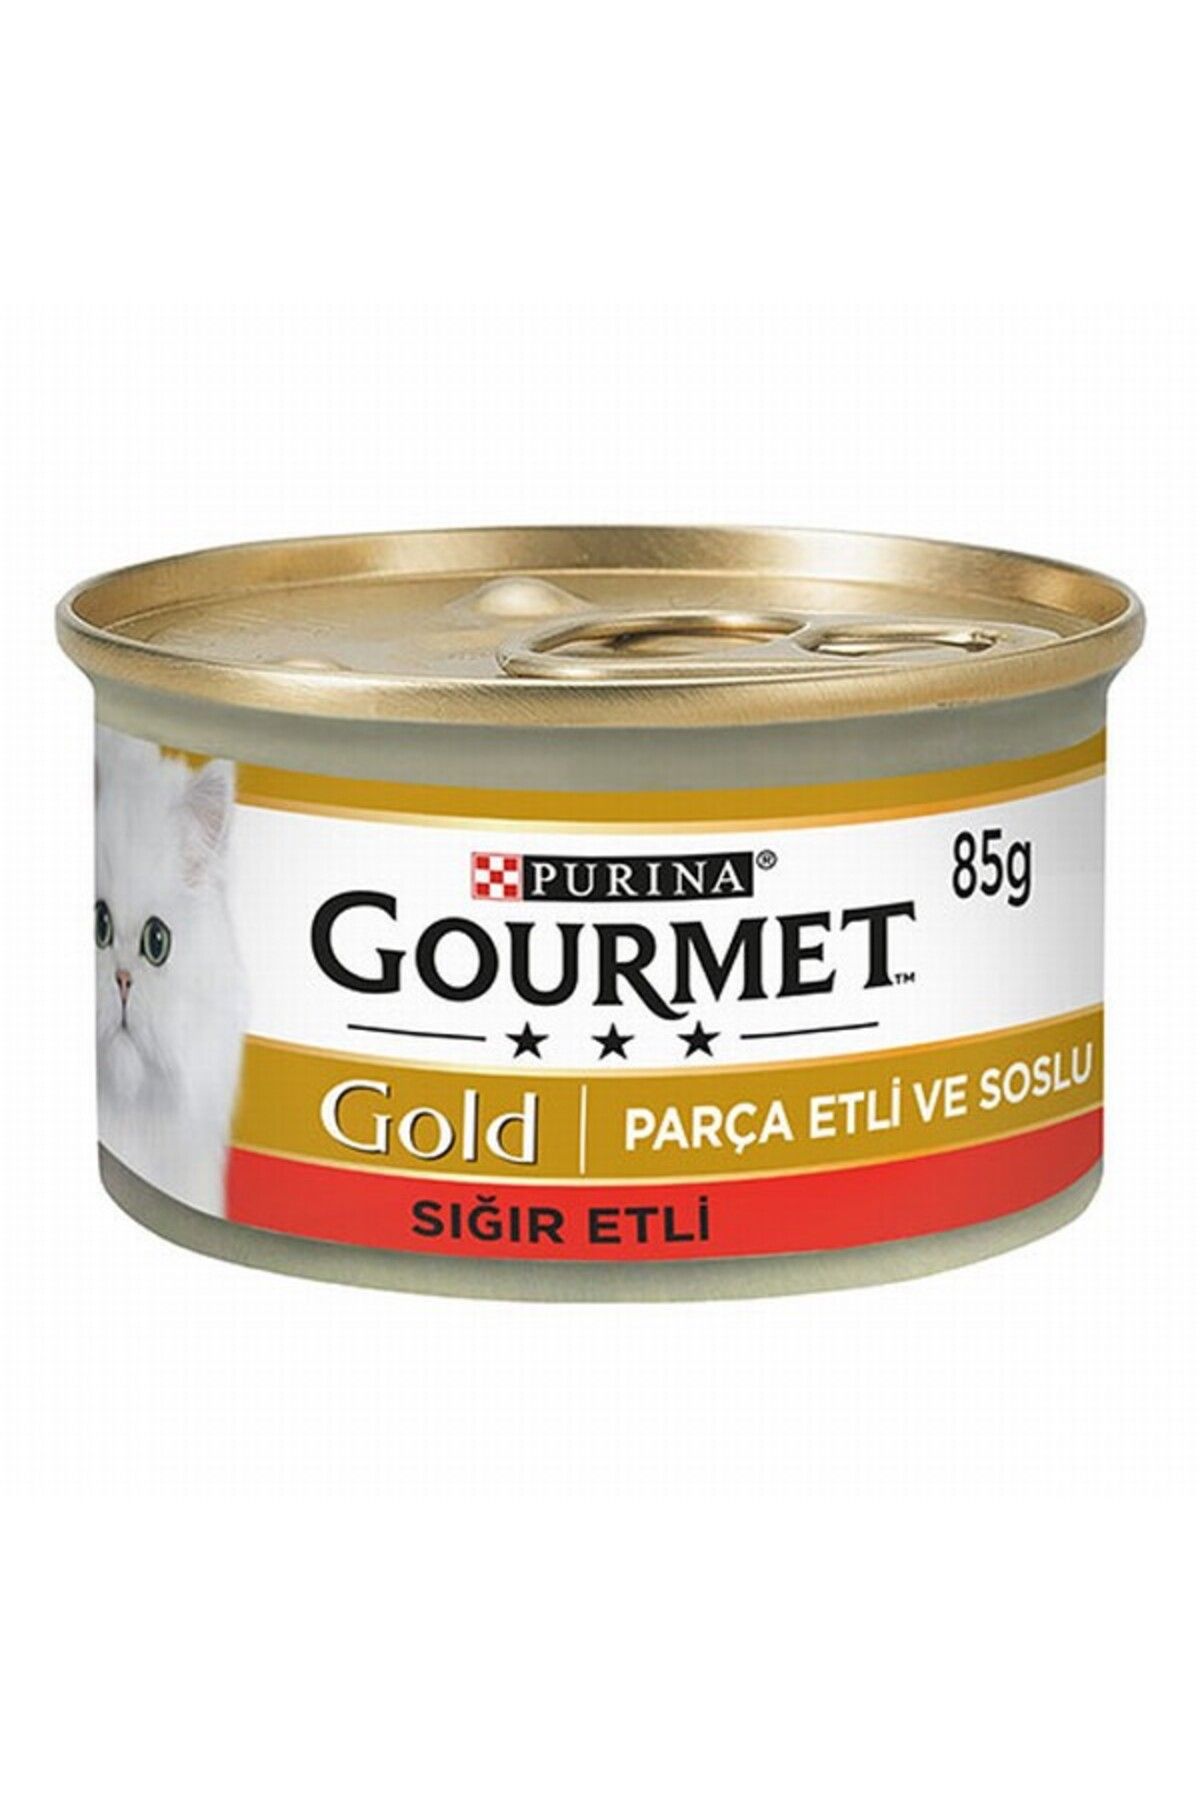 Gourmet Gold Parça Etli Soslu Sığır Etli Yetişkin Kedi Konservesi 6 Adet 85 gr